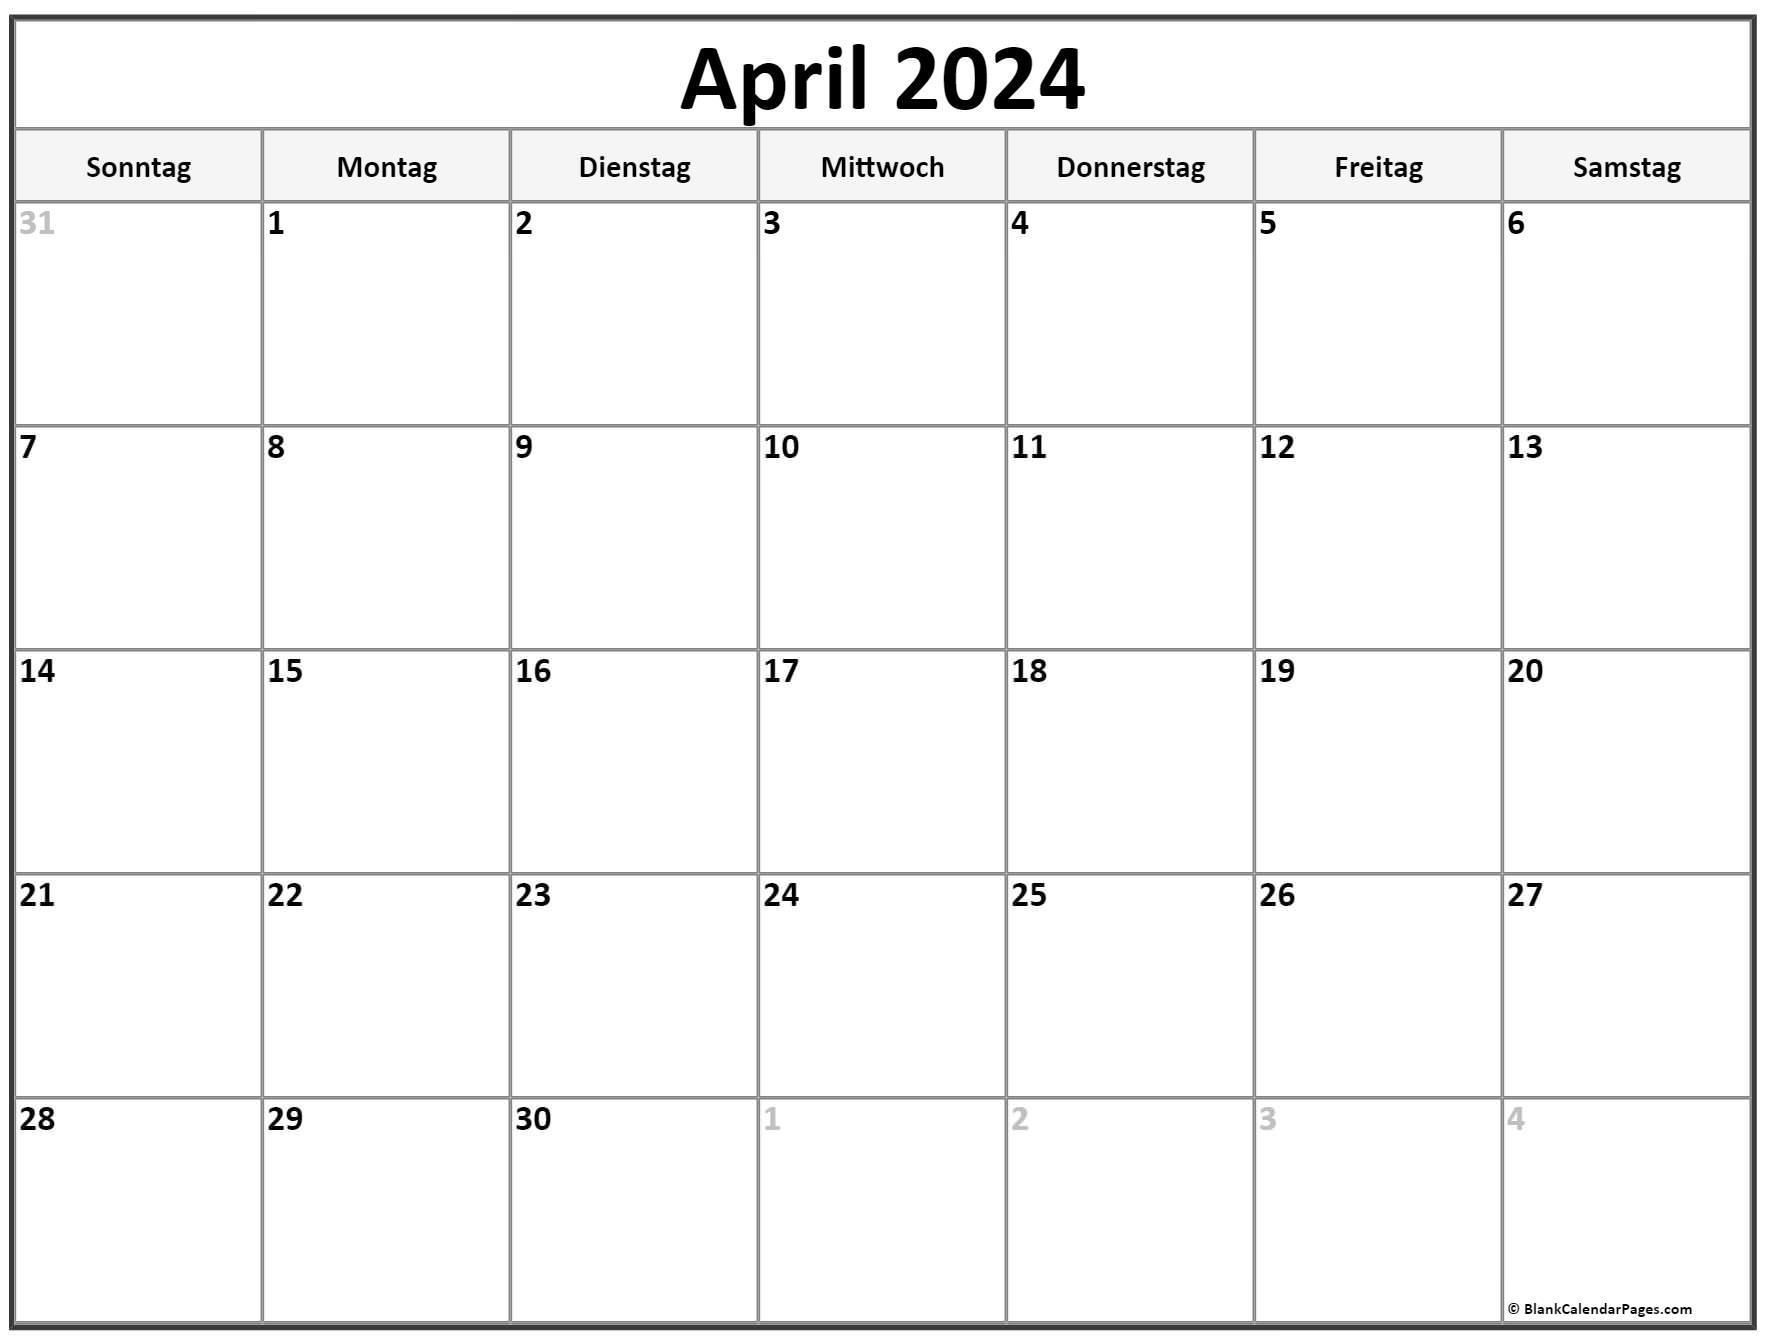 План на апрель 2024 в сельском клубе